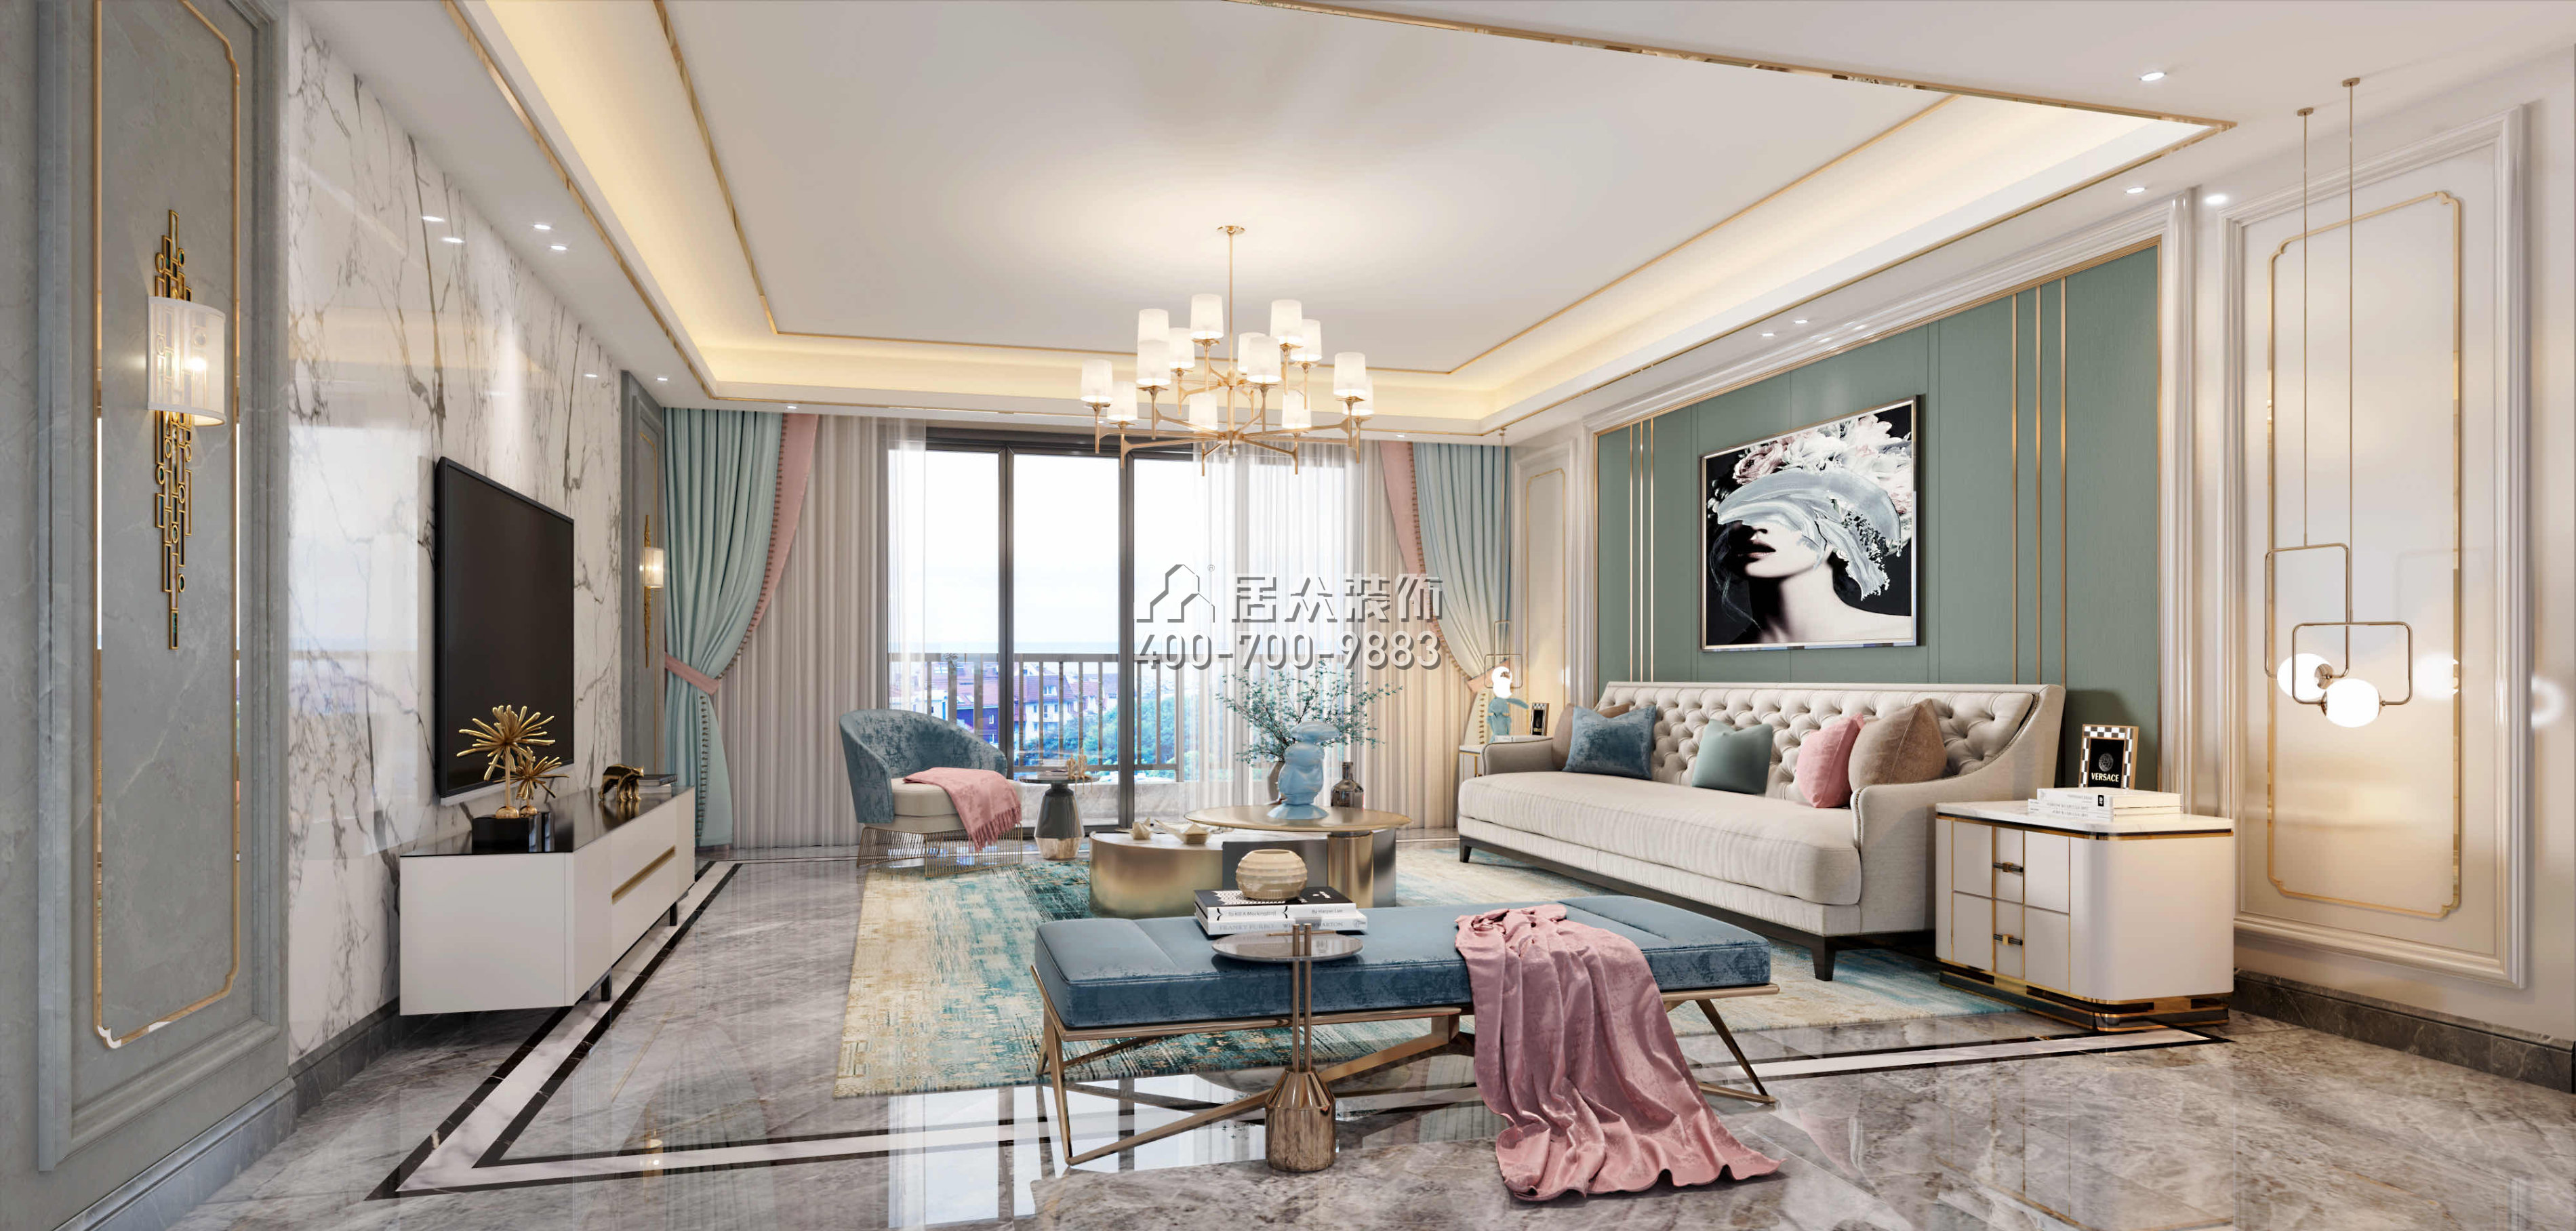 翡翠山湖一期180平方米现代简约风格平层户型客厅装修效果图